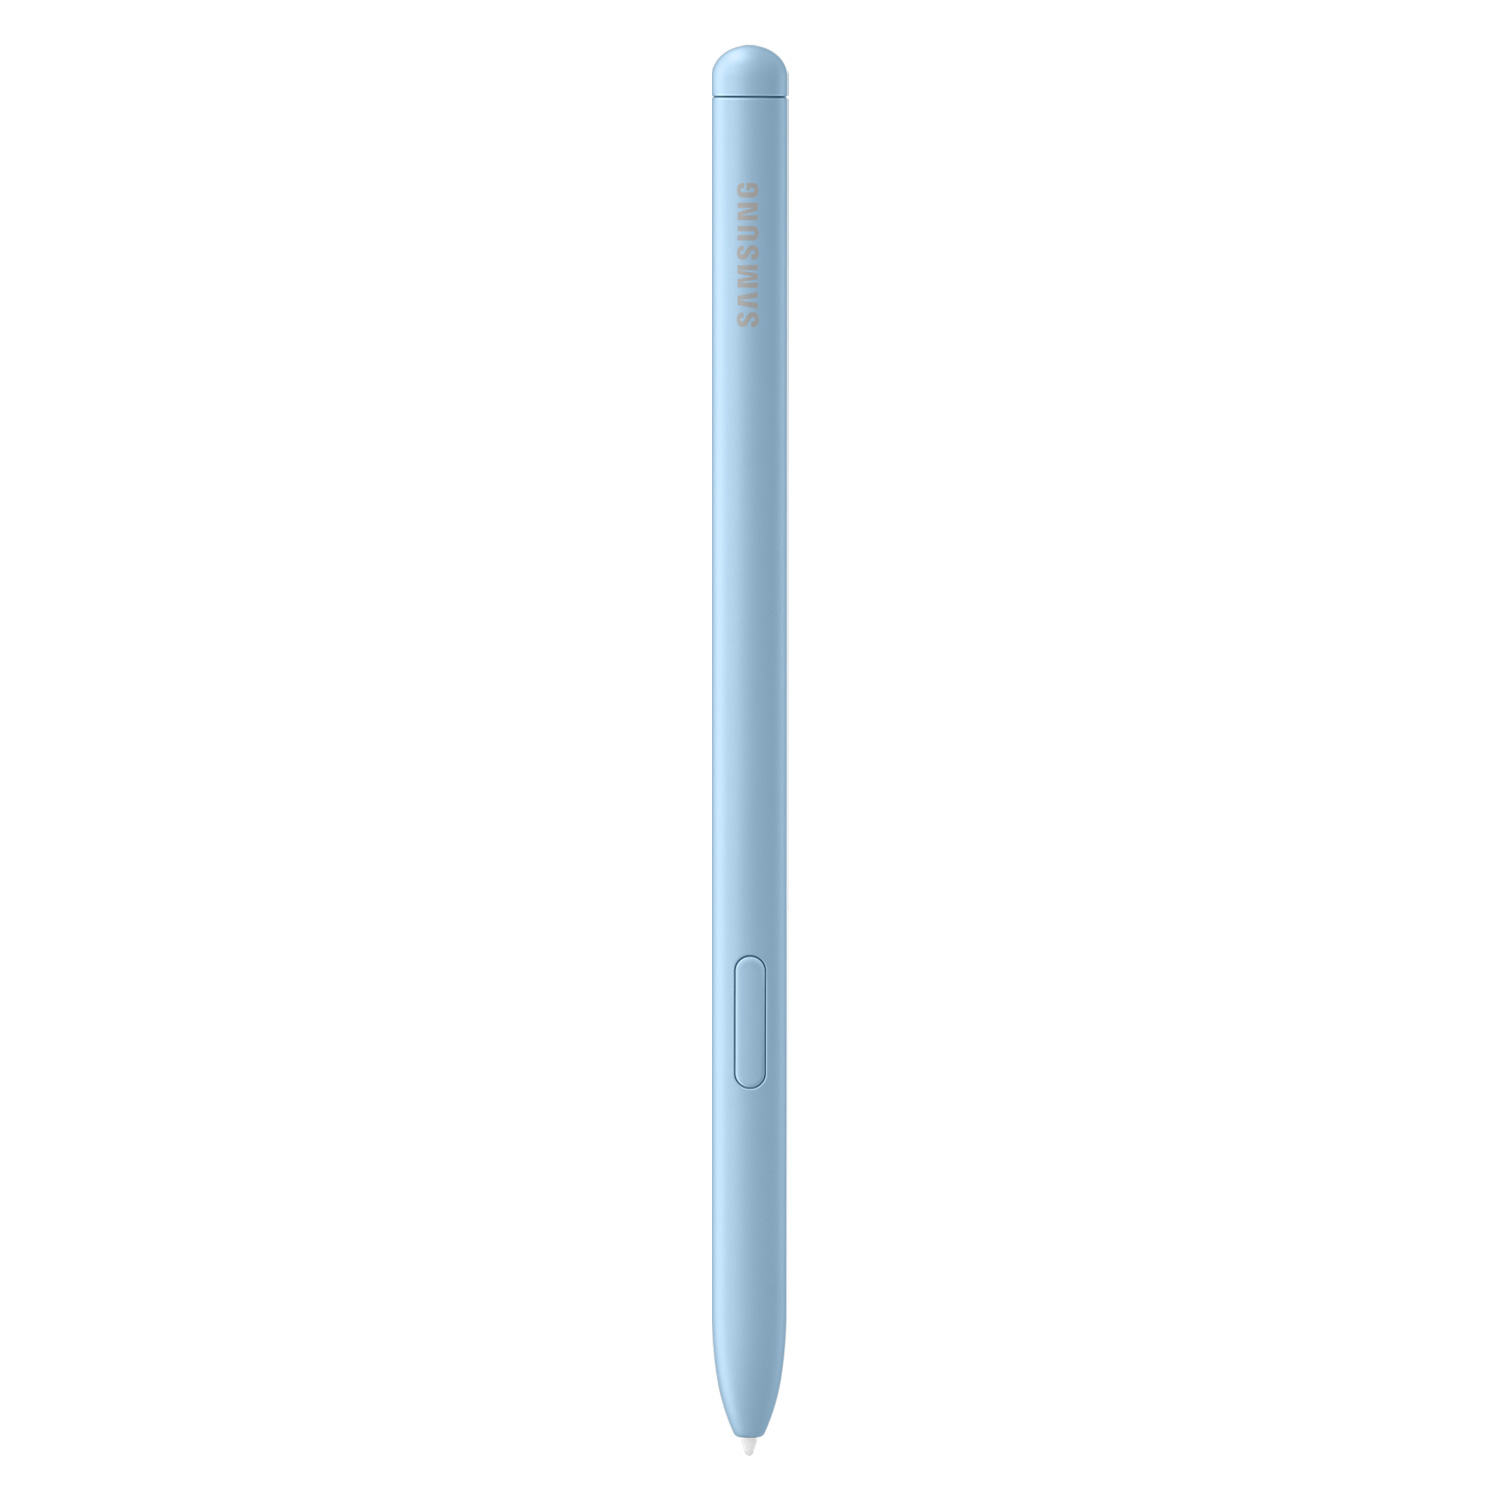 Tablet Samsung Galaxy Tab S6 Lite SM-P613 2022 Tela 10.4" 64GB 4GB RAM com Caneta - Azul